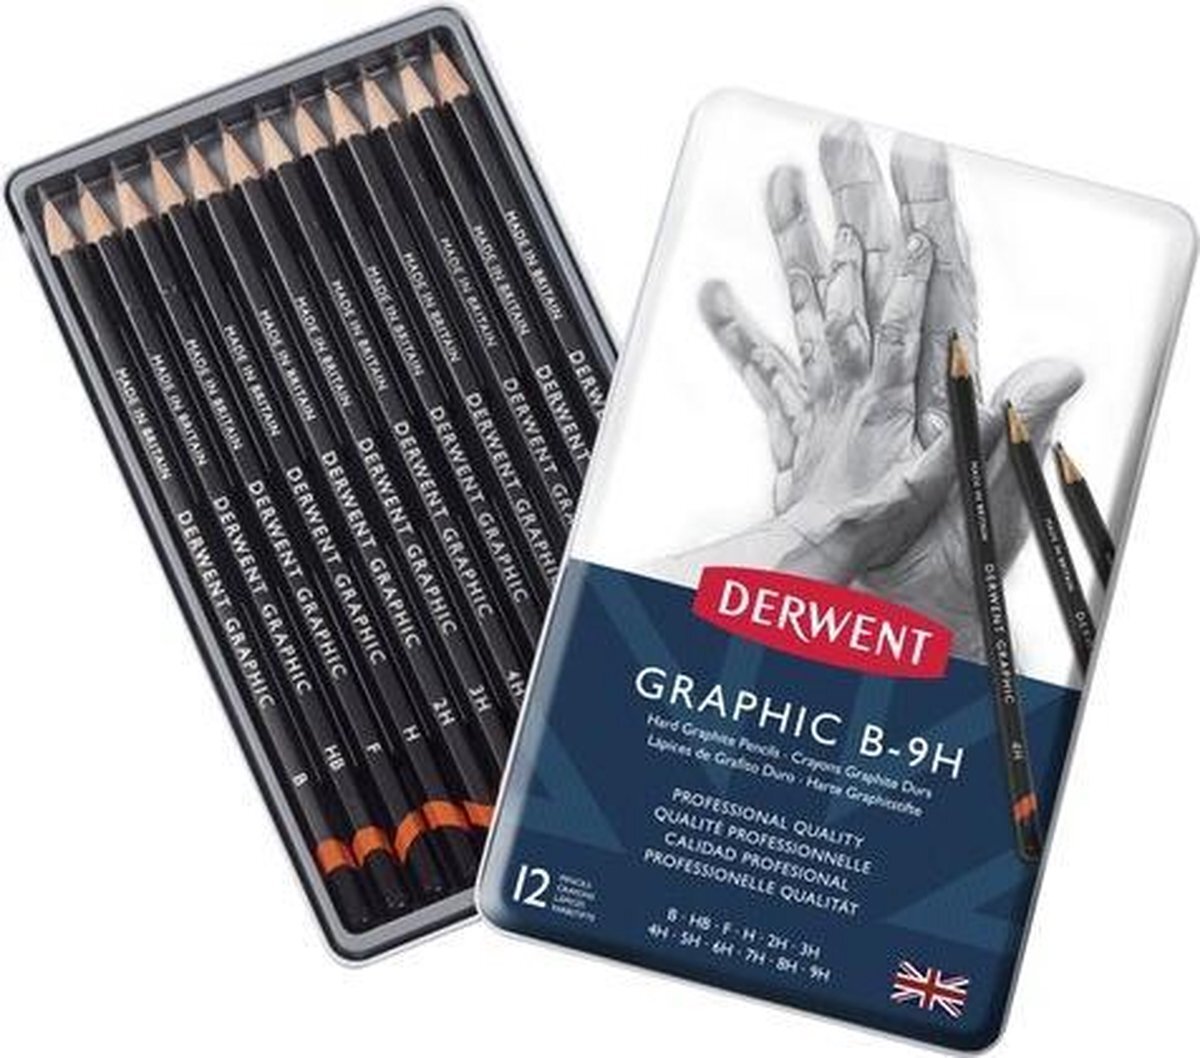 Derwent Graphic Hard potloden set in blik assorti 12 stuks